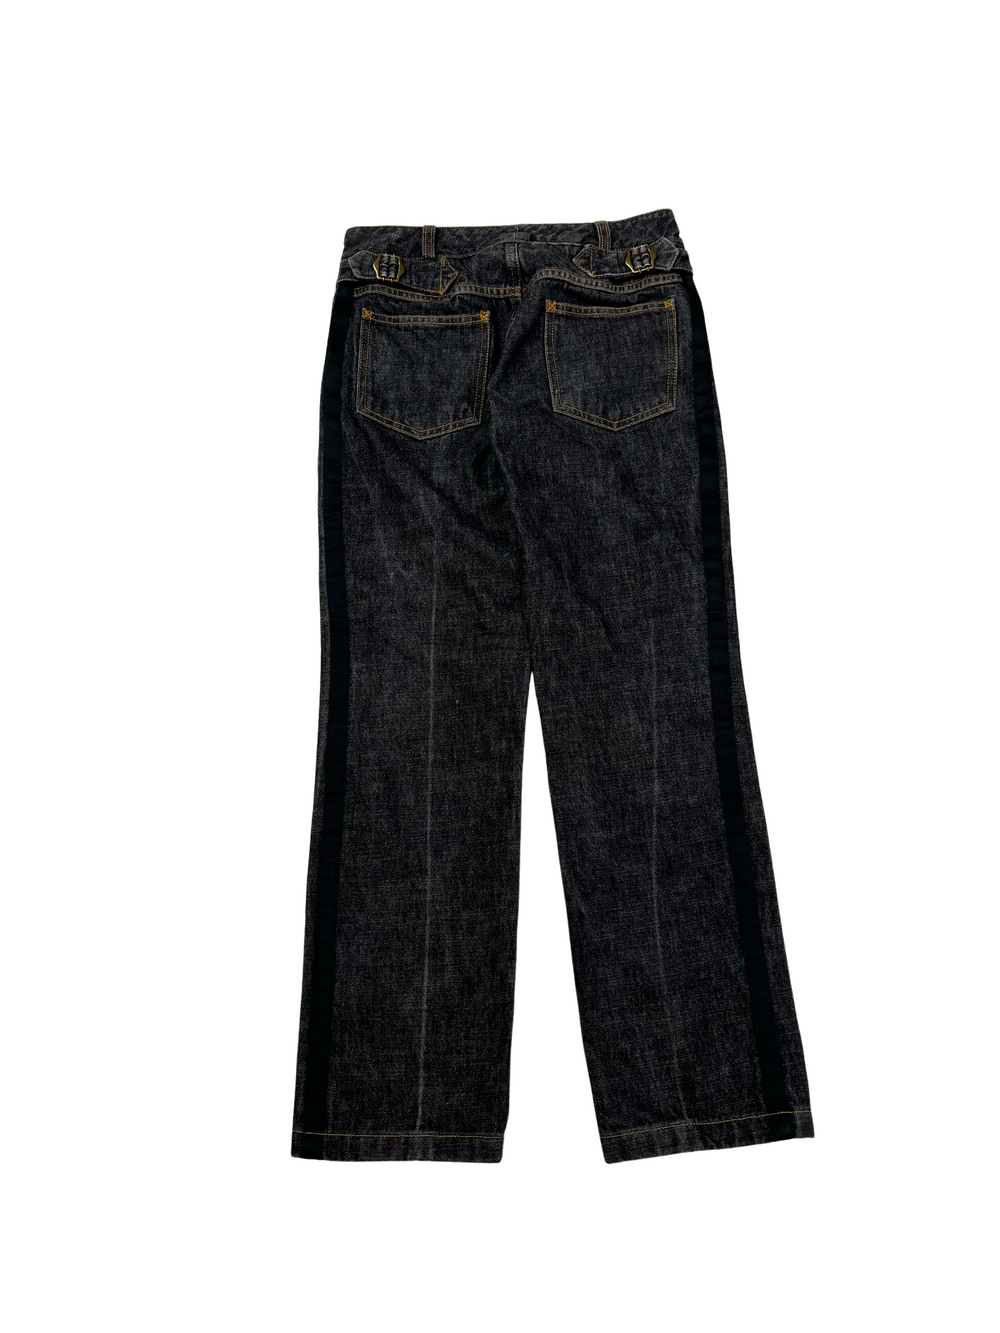 Vintage 1990s D&G Pants Straight cut (26)